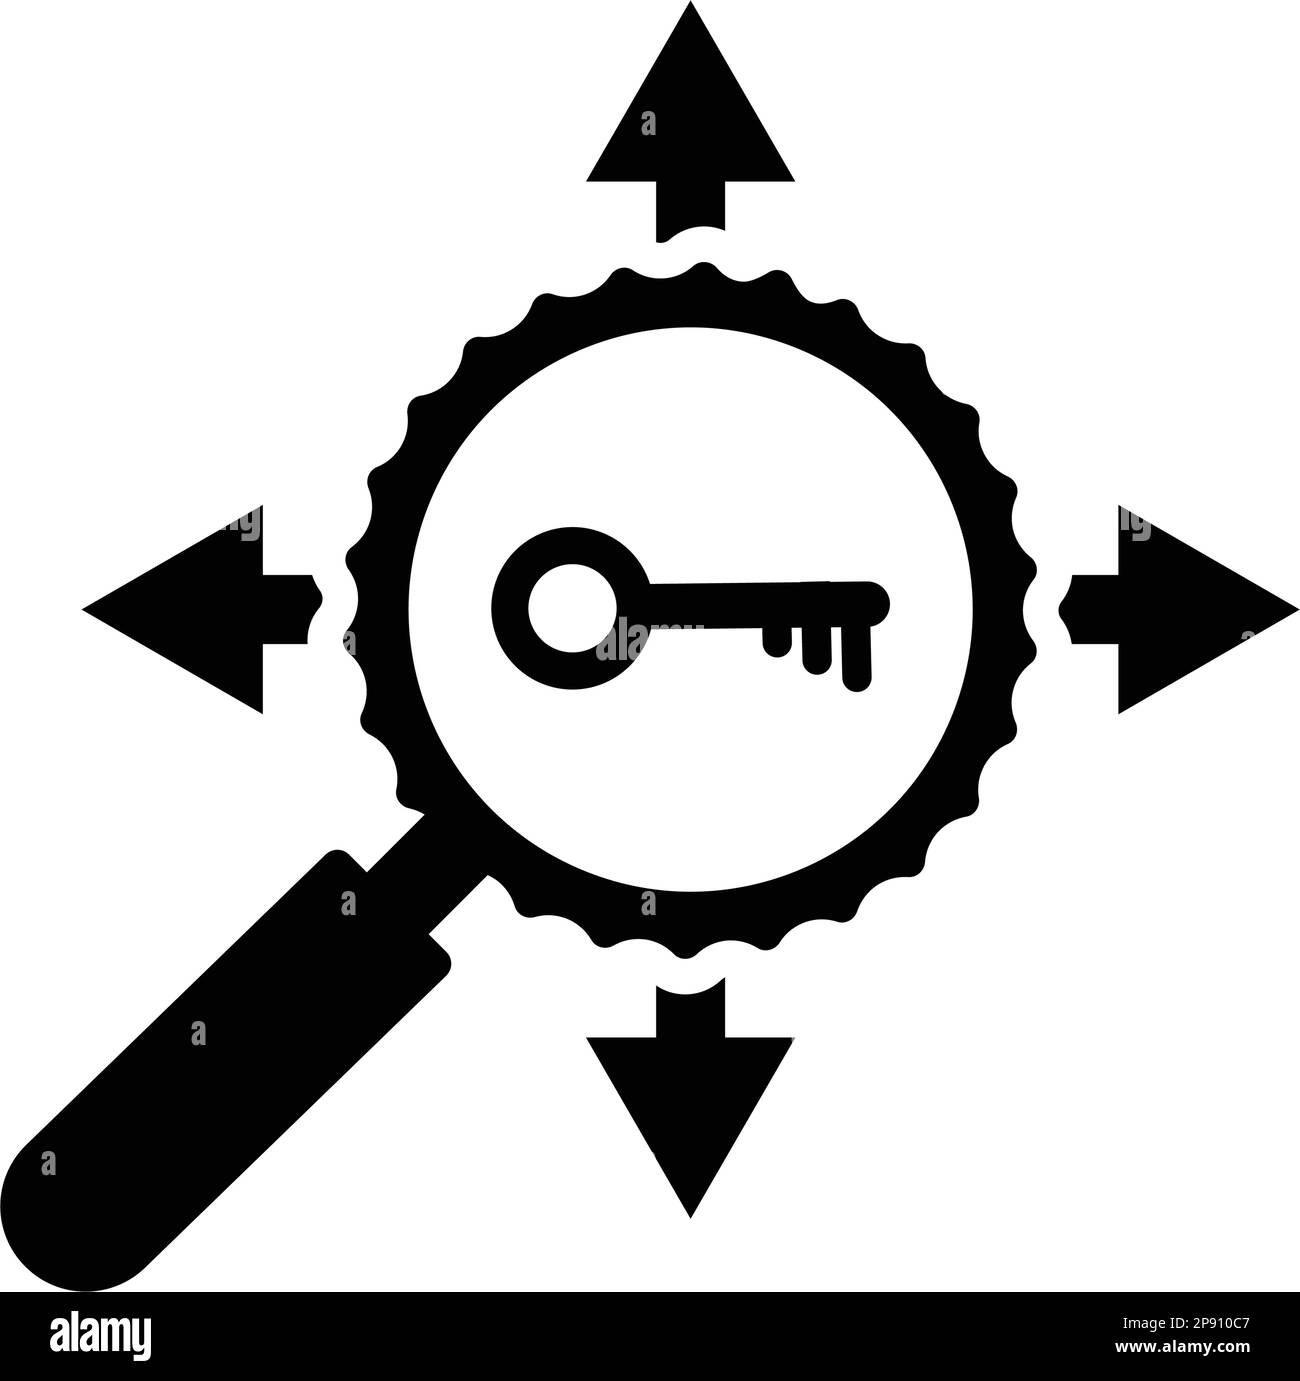 Symbol für Keyword-Ziel. Verwendung in Print-, Web-, Design-Projekten oder jeder Art von kommerziellen Zwecken. Stock Vektor